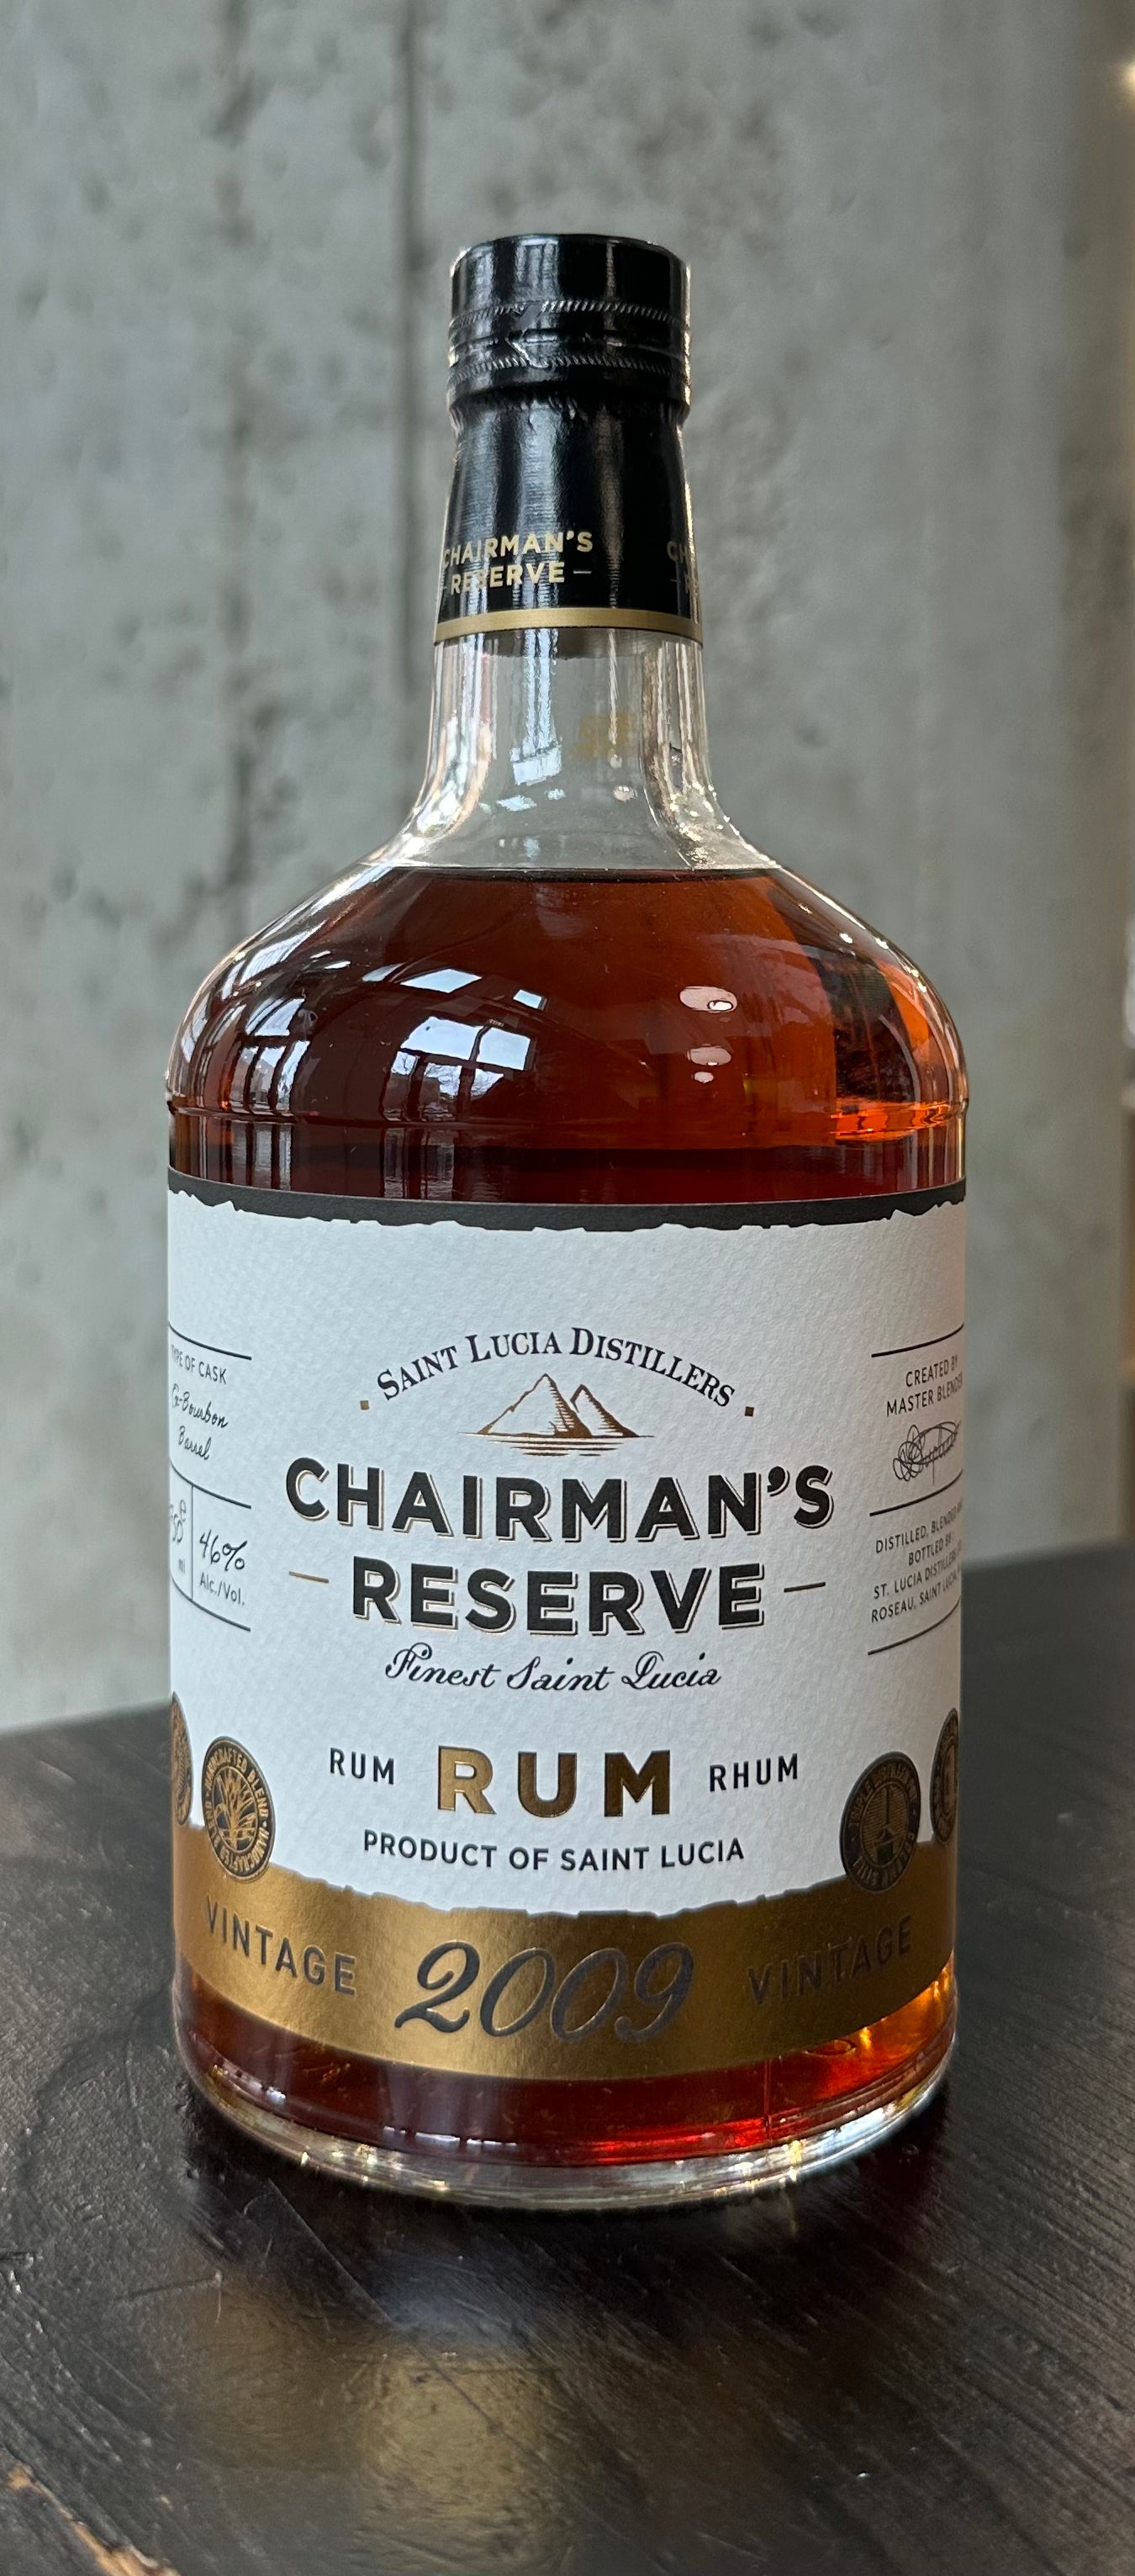 Chairman's Reserve Rum 2009 Vintage, Santa Lucia